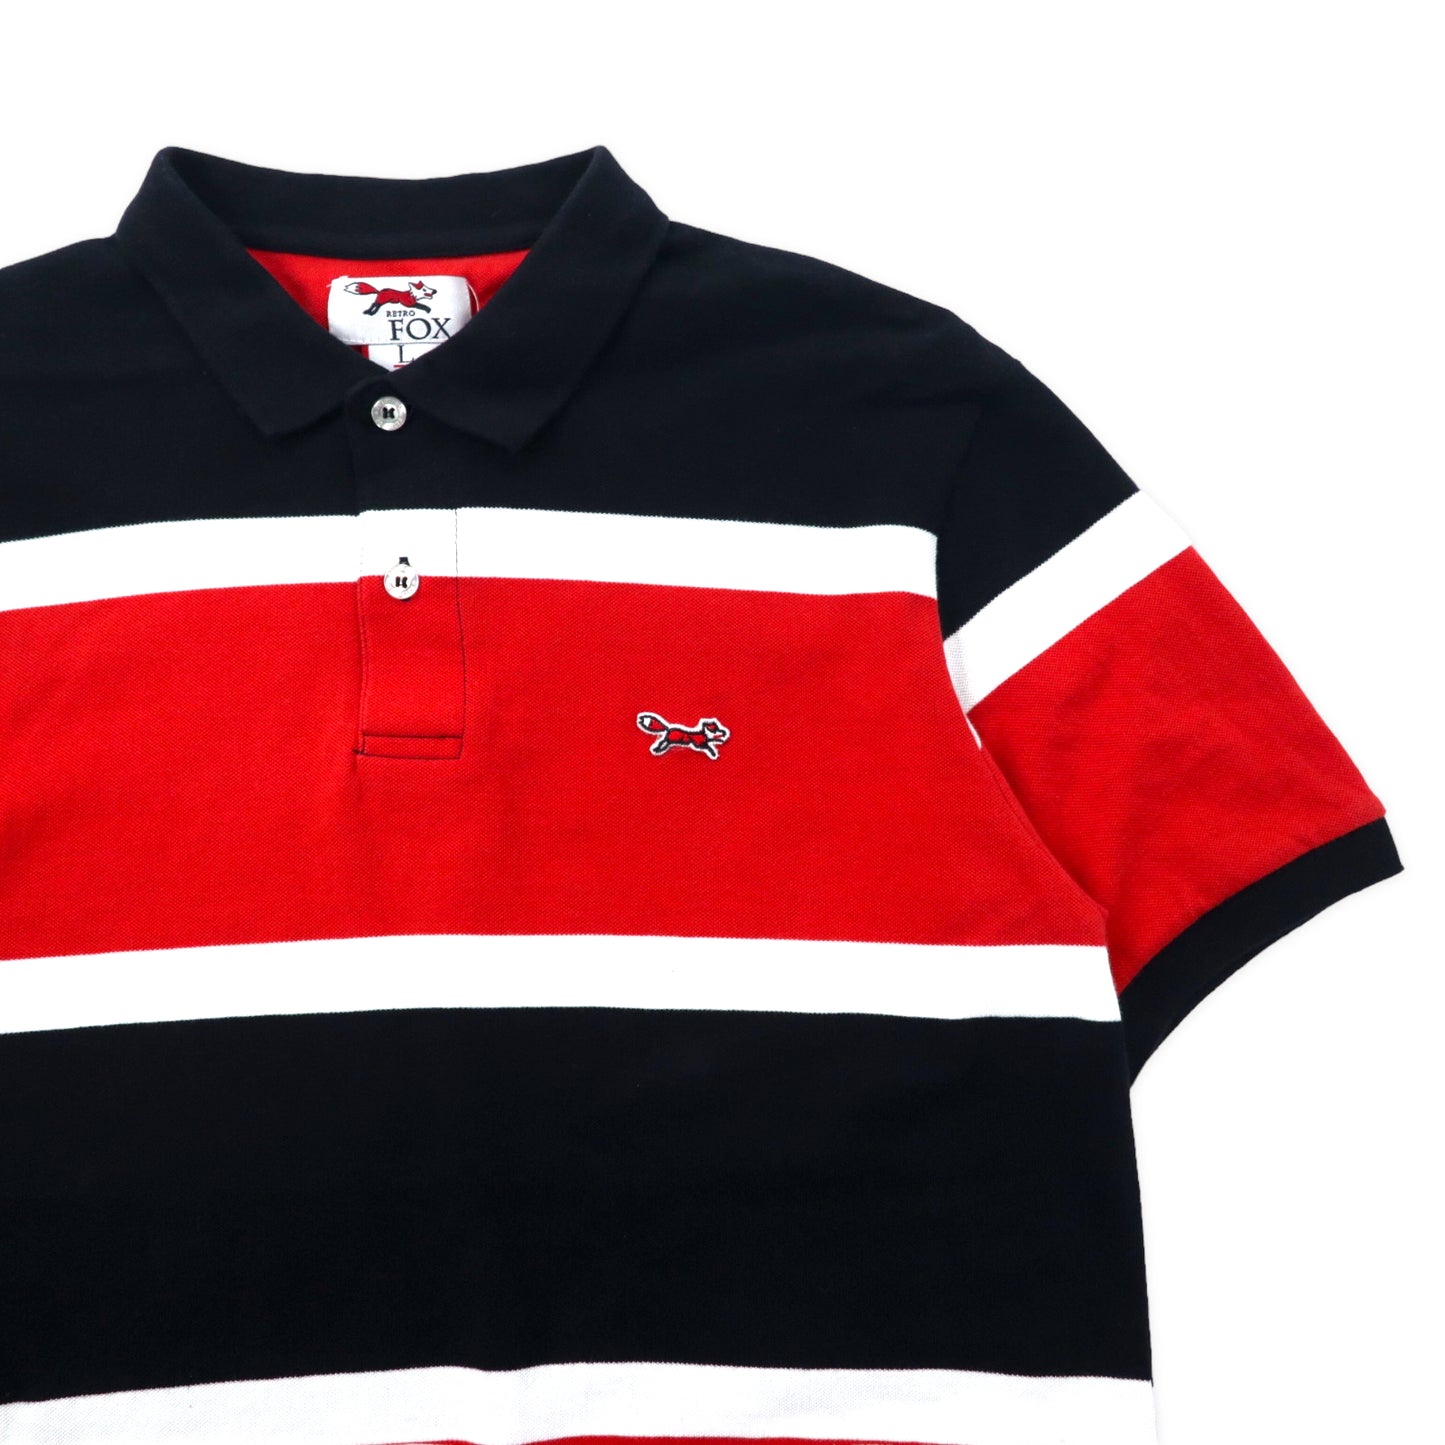 RETRO FOX ボーダー ポロシャツ L レッド ブラック コットン ワンポイントロゴ キツネ